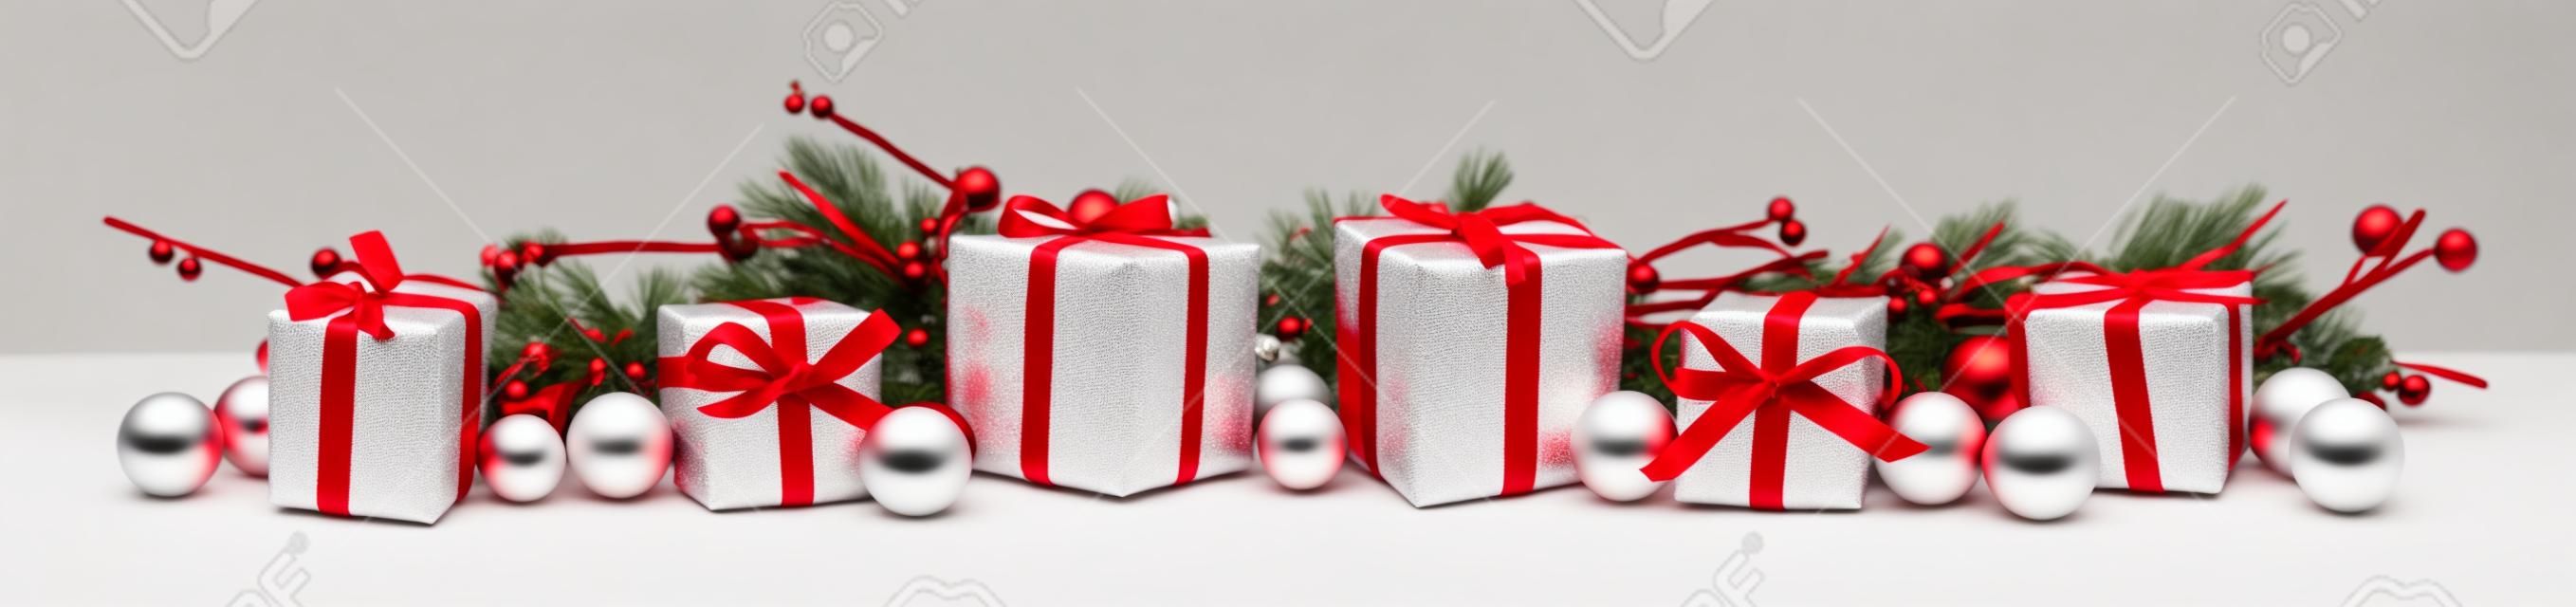 Christmas granicy z gałęzi i białych i czerwonych prezentów na białym tle